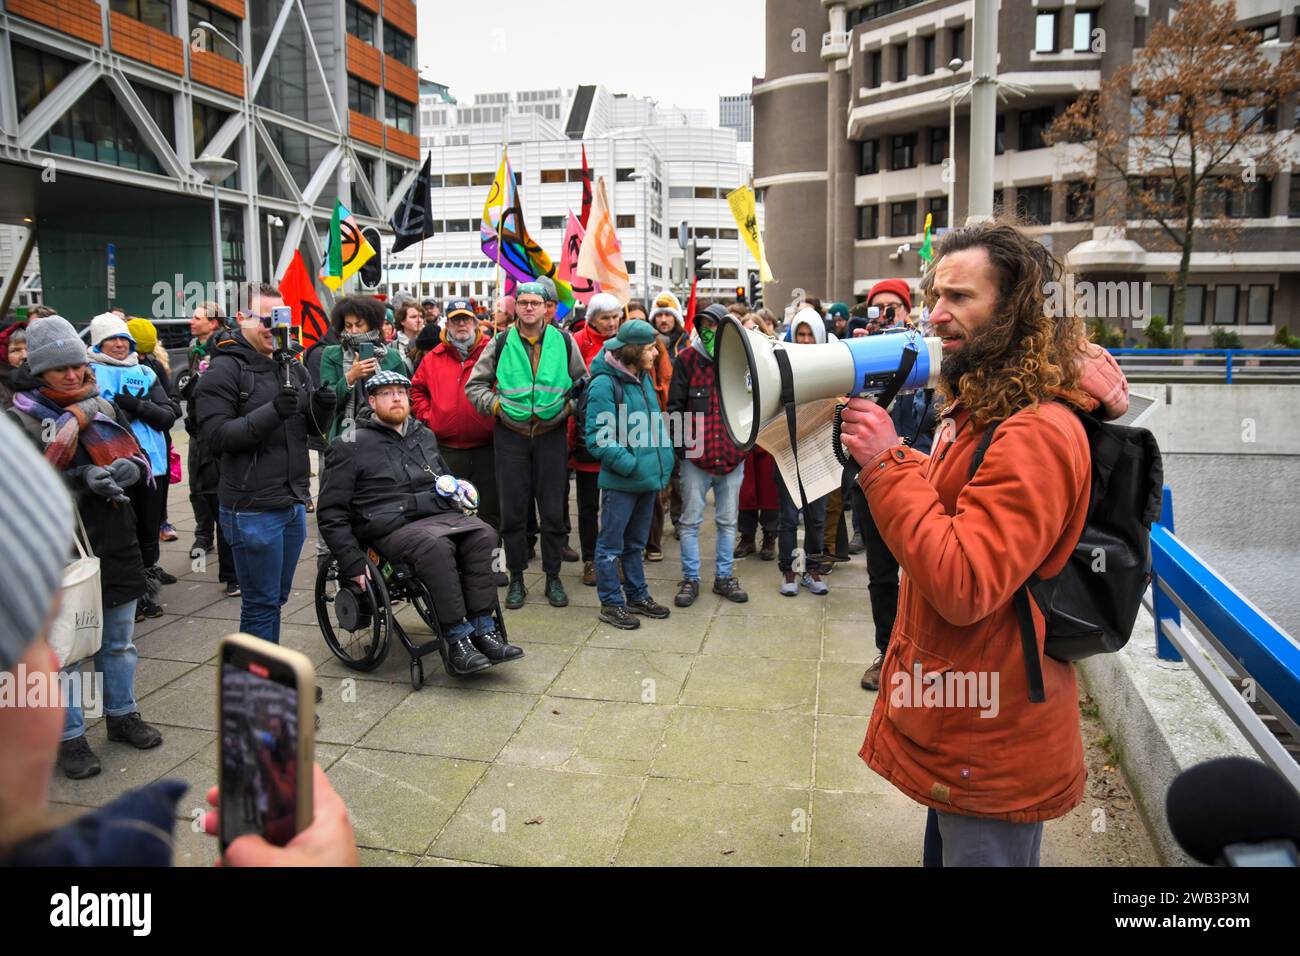 Den Haag, die Niederlande, 8. januar 2024. Die Extinktionsrebellion marschierte zum senat des niederländischen parlaments, um gegen Subventionen für fossile Brennstoffe zu protestieren. Quelle: Pmvfoto/Alamy Live News Stockfoto